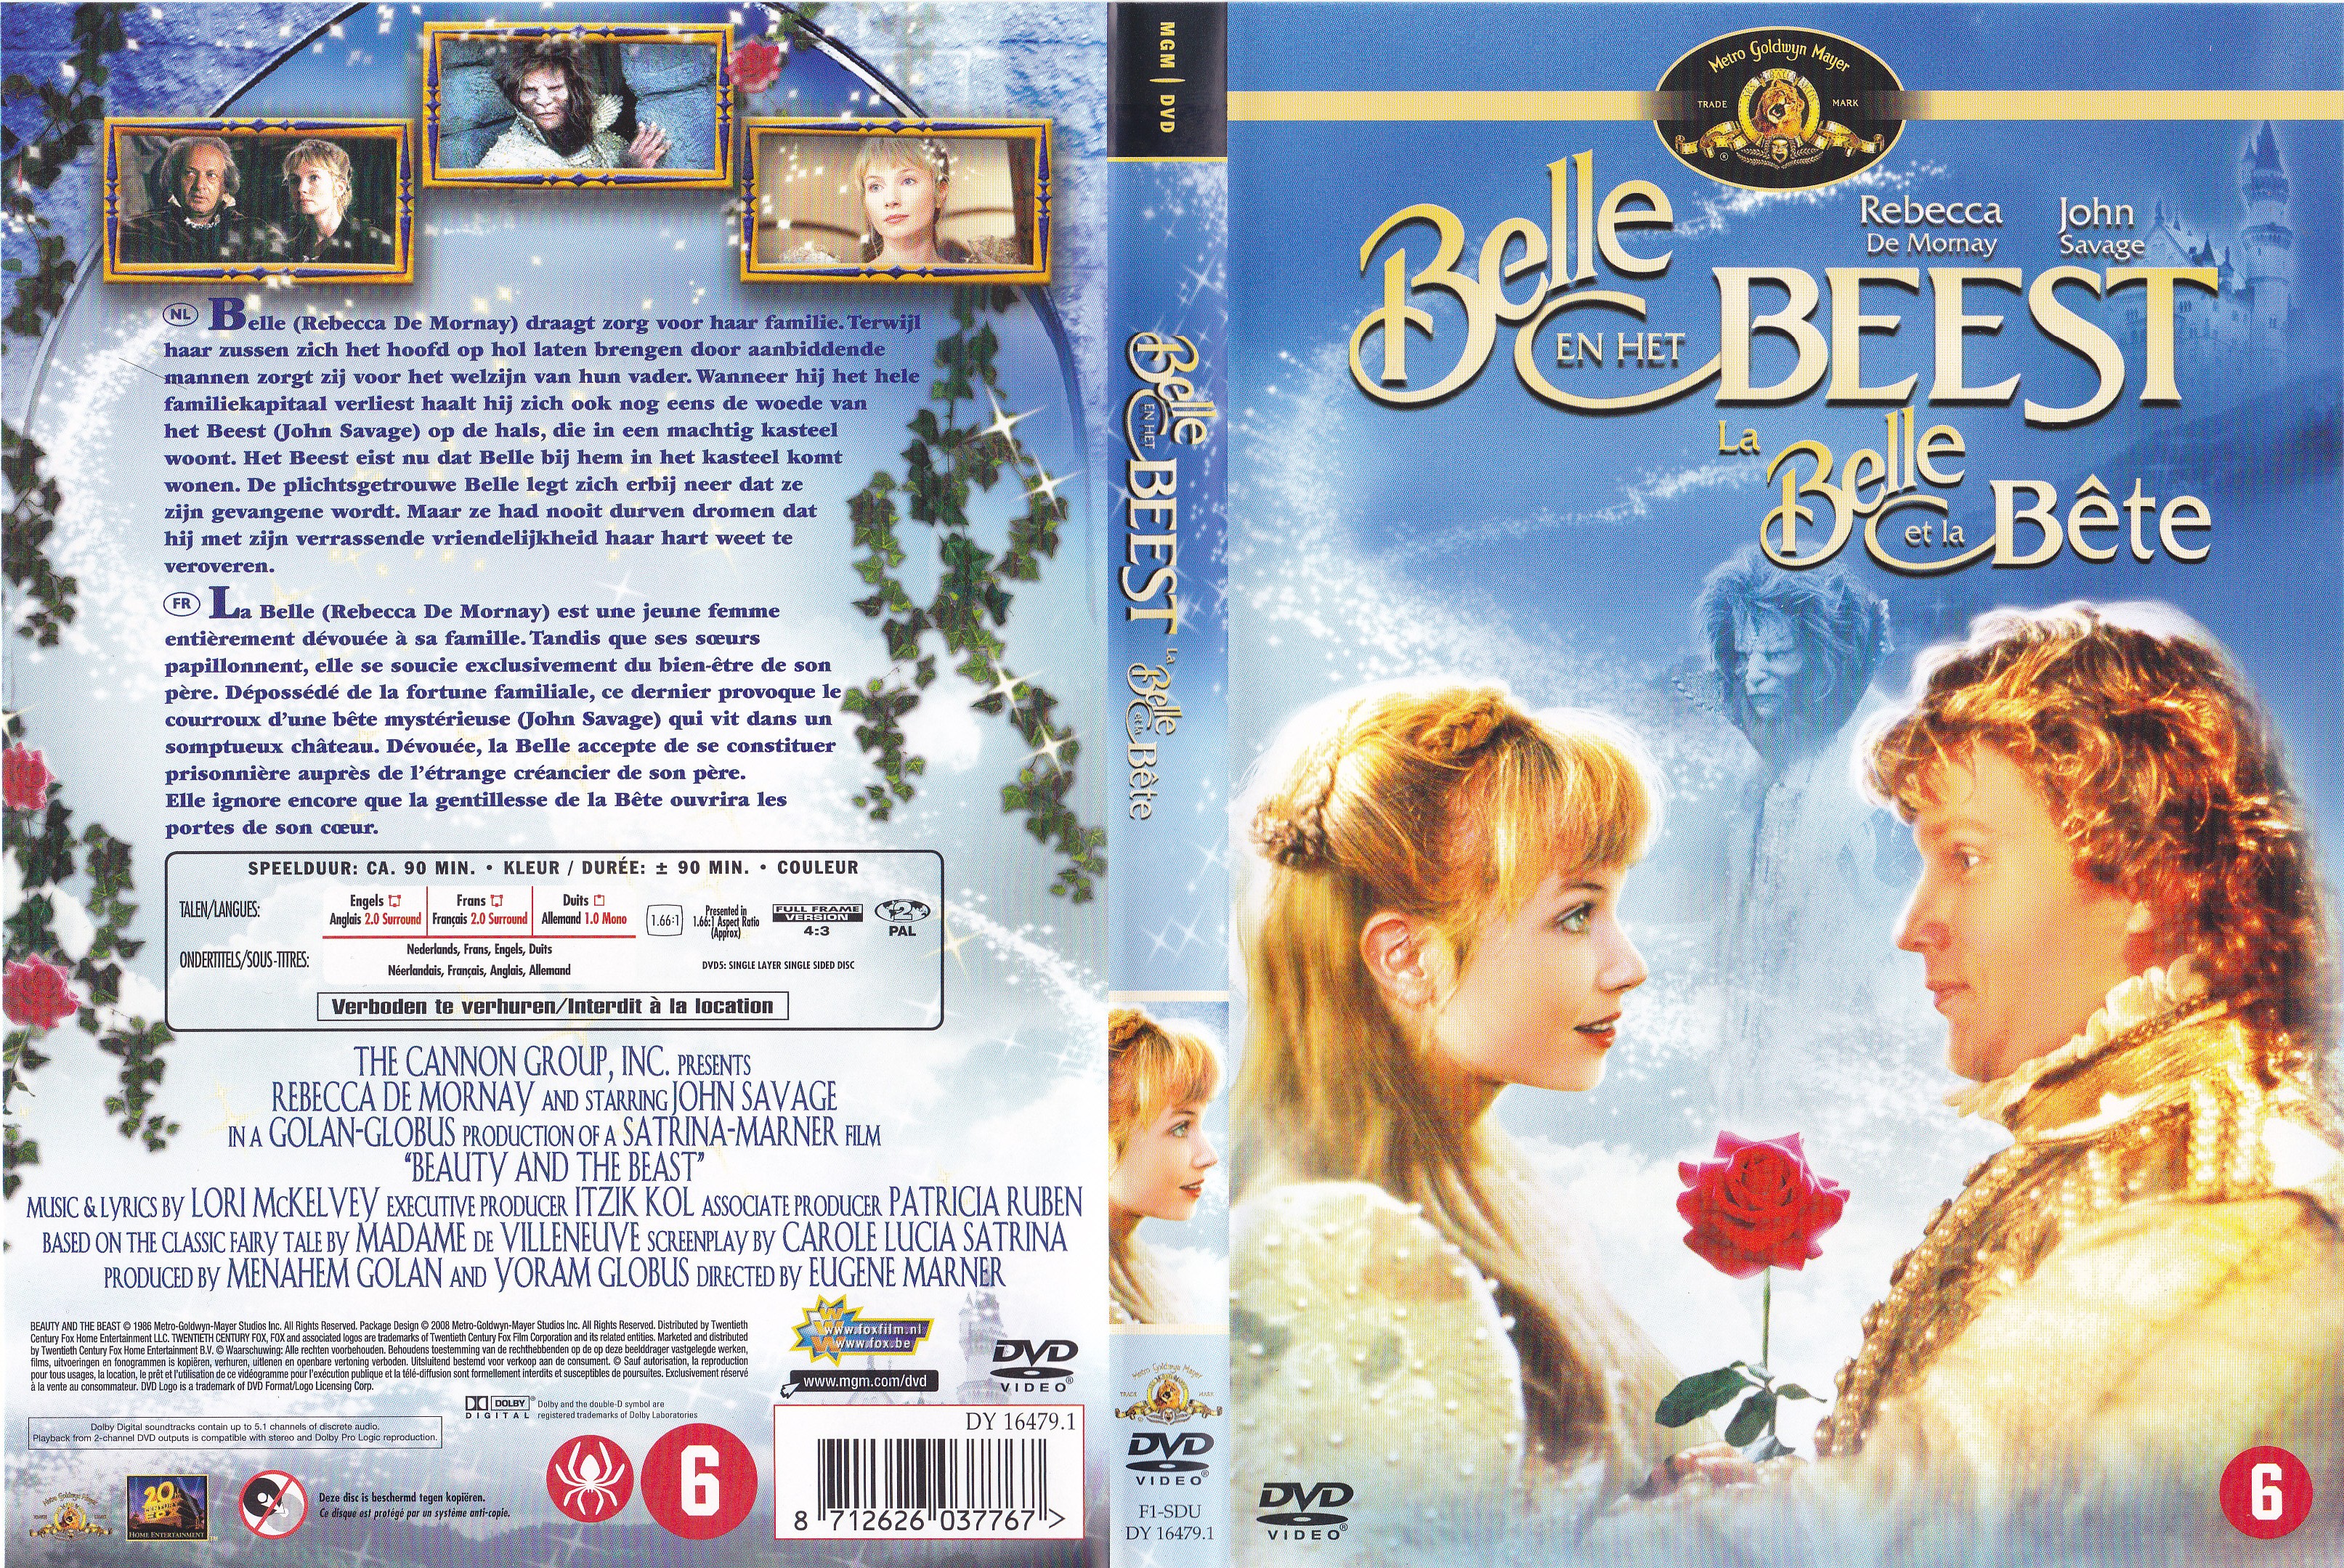 Jaquette DVD La Belle et la Bte (1986)